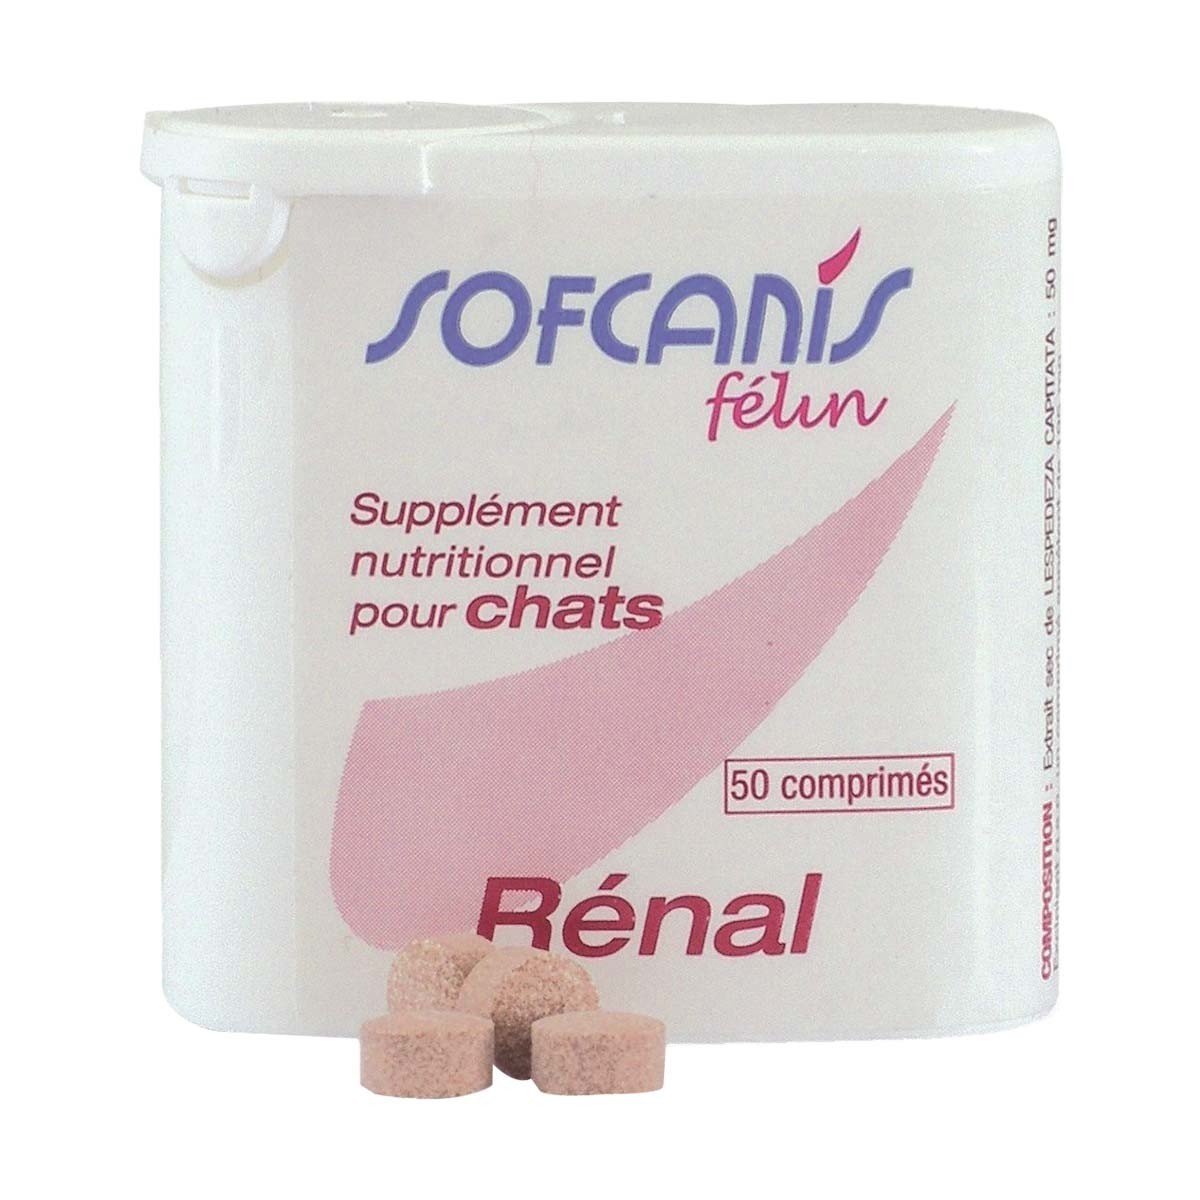 SOFCANIS Felin Renal - mantenimiento de la función renal en el gato